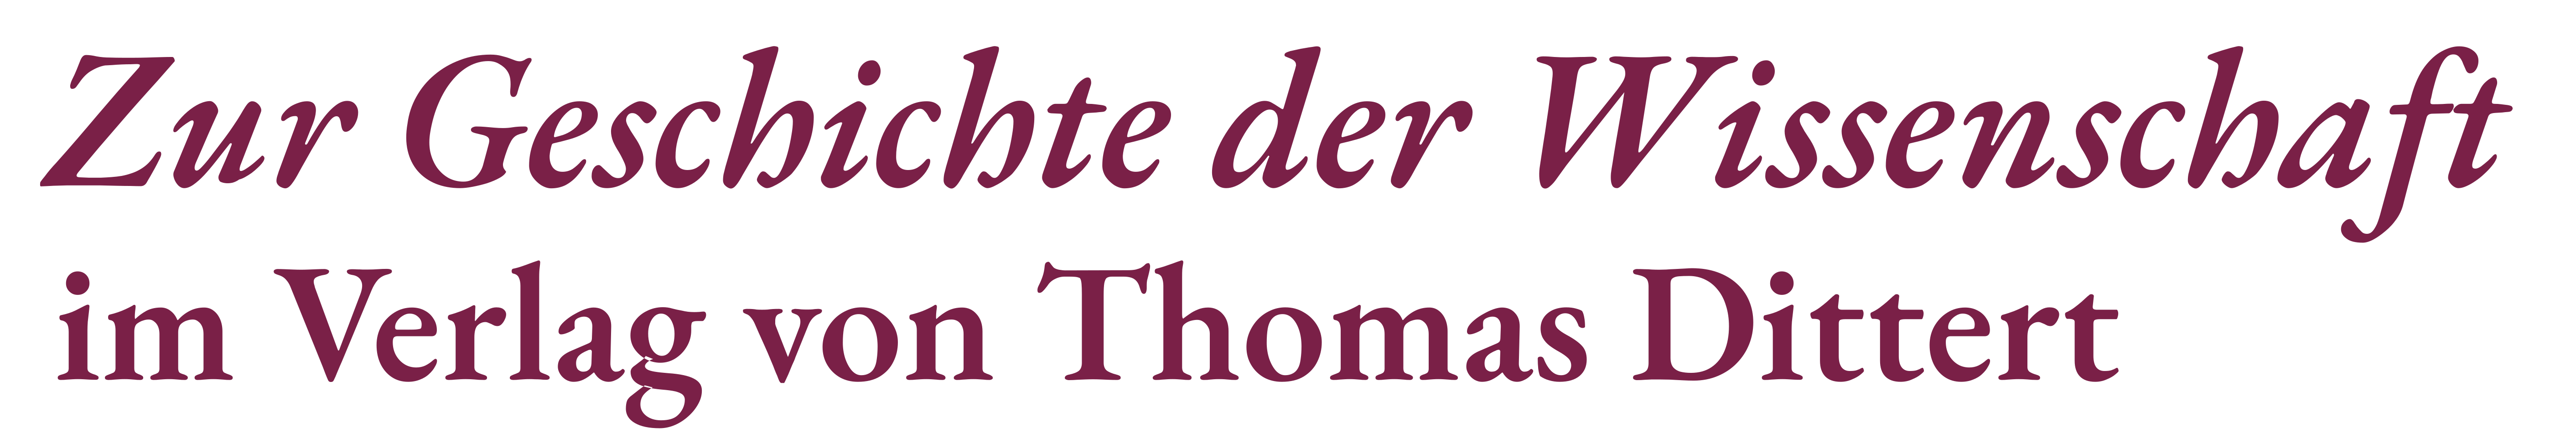 Titel: Zur Geschichte der Wissenschaft  •  im Verlag von Thomas Dittert